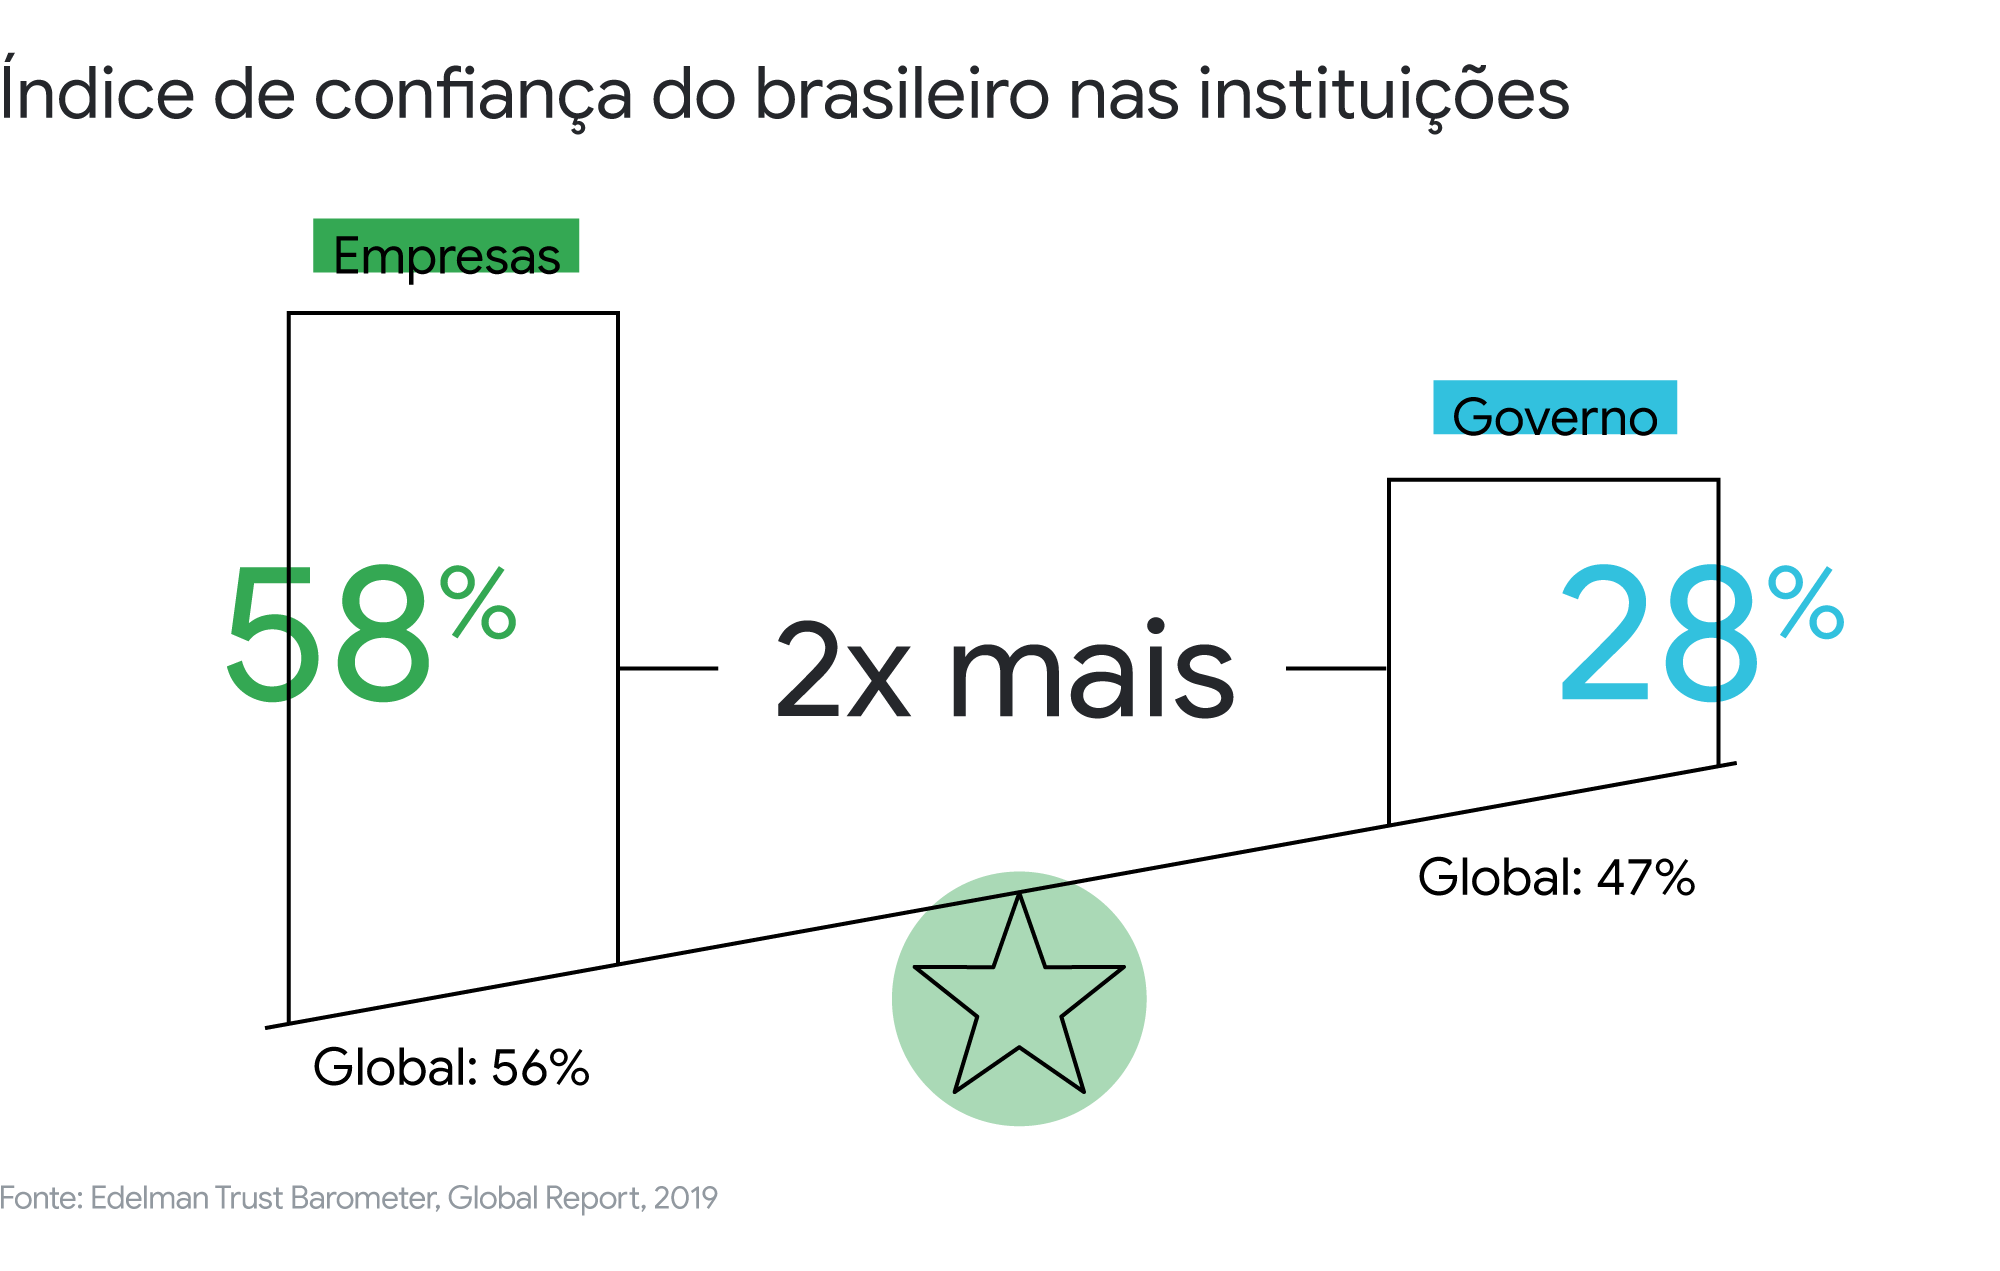 Por que a resiliência é tão importante para marcas brasileiras enfrentarem a crise?